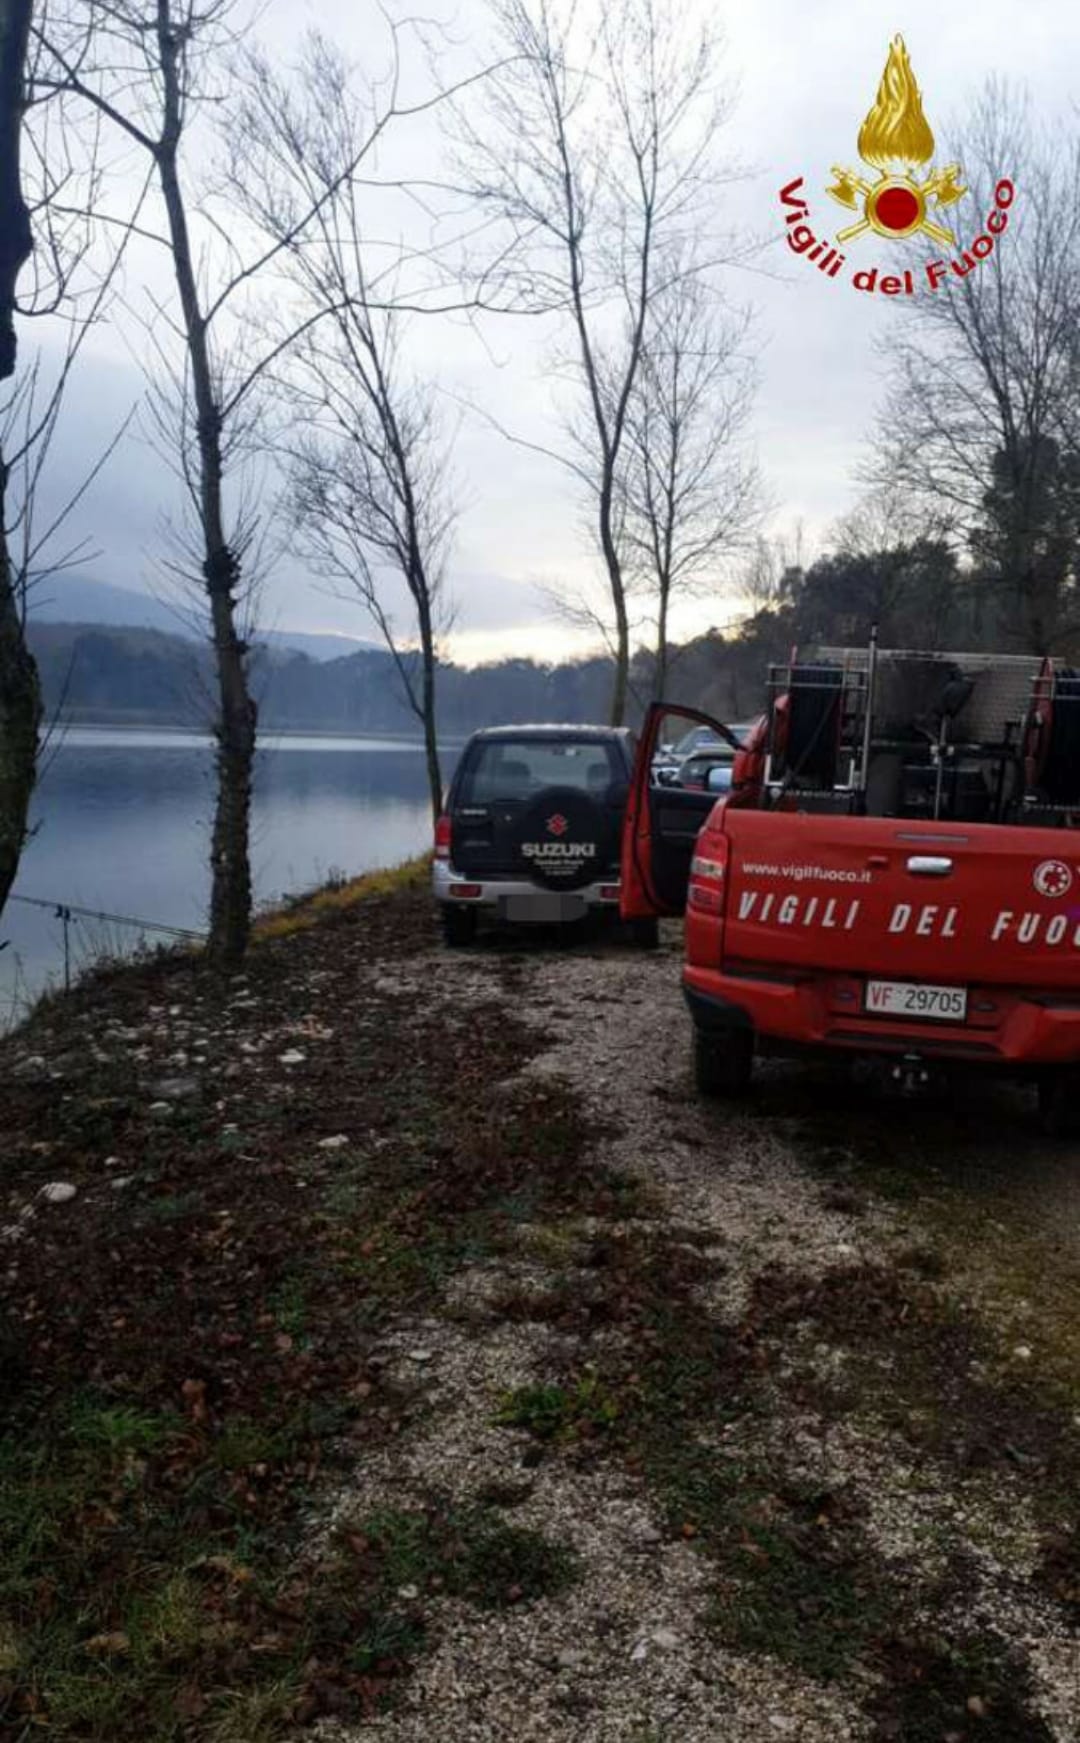 Castelpagano: ore di apprensione per il 38enne scomparso nel Lago dei cigni di Ciorlano